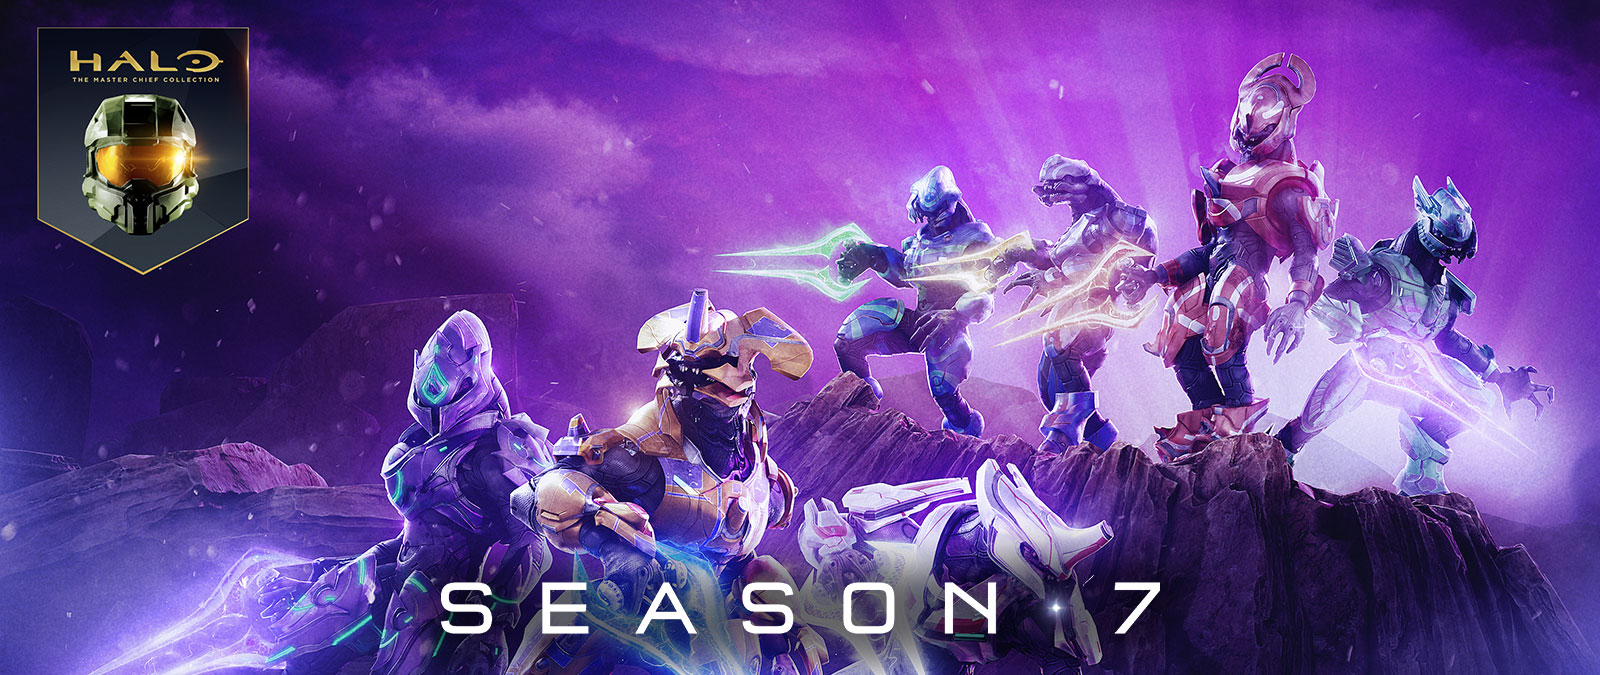 Halo: «Коллекция Мастера Чифа», сезон 7, несколько элитных бойцов позируют в разных доспехах и держат энергетические мечи разного цвета